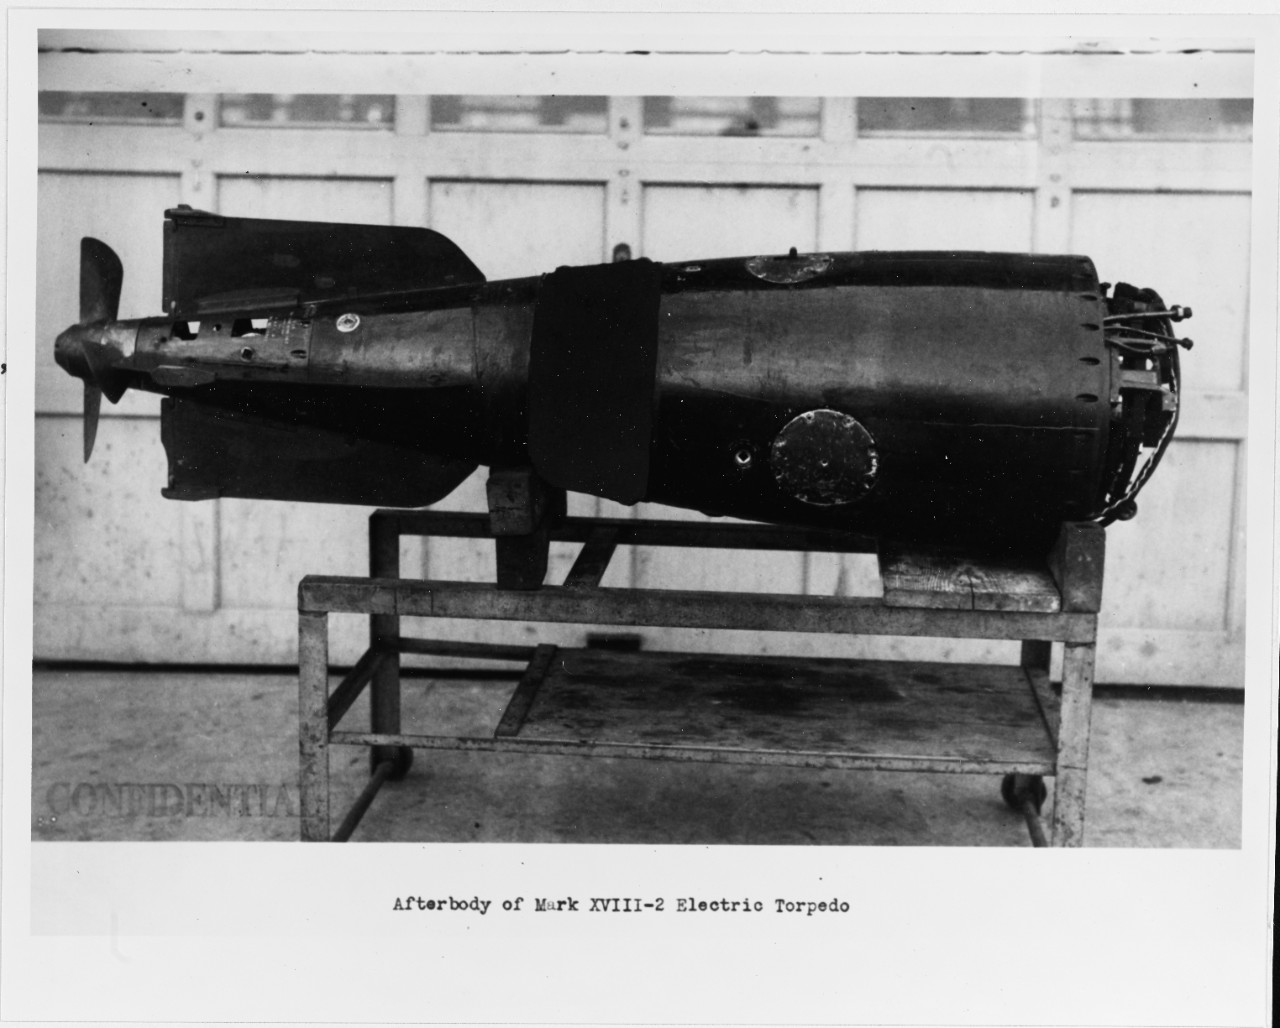 Mk. XVIII-2 electric torpedo. 